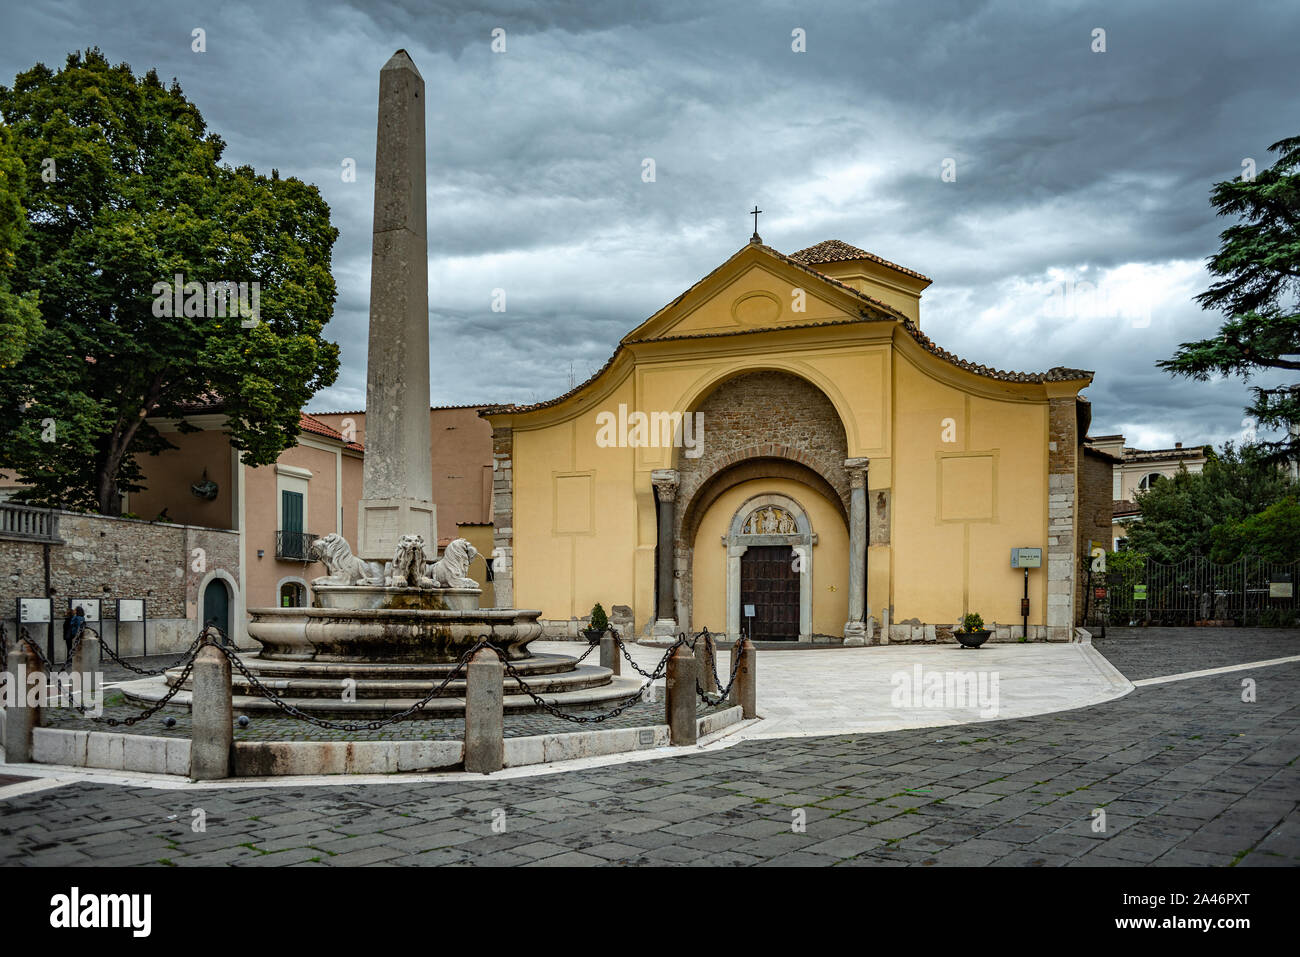 Church of Santa Sofia in Benevento Italy Stock Photo